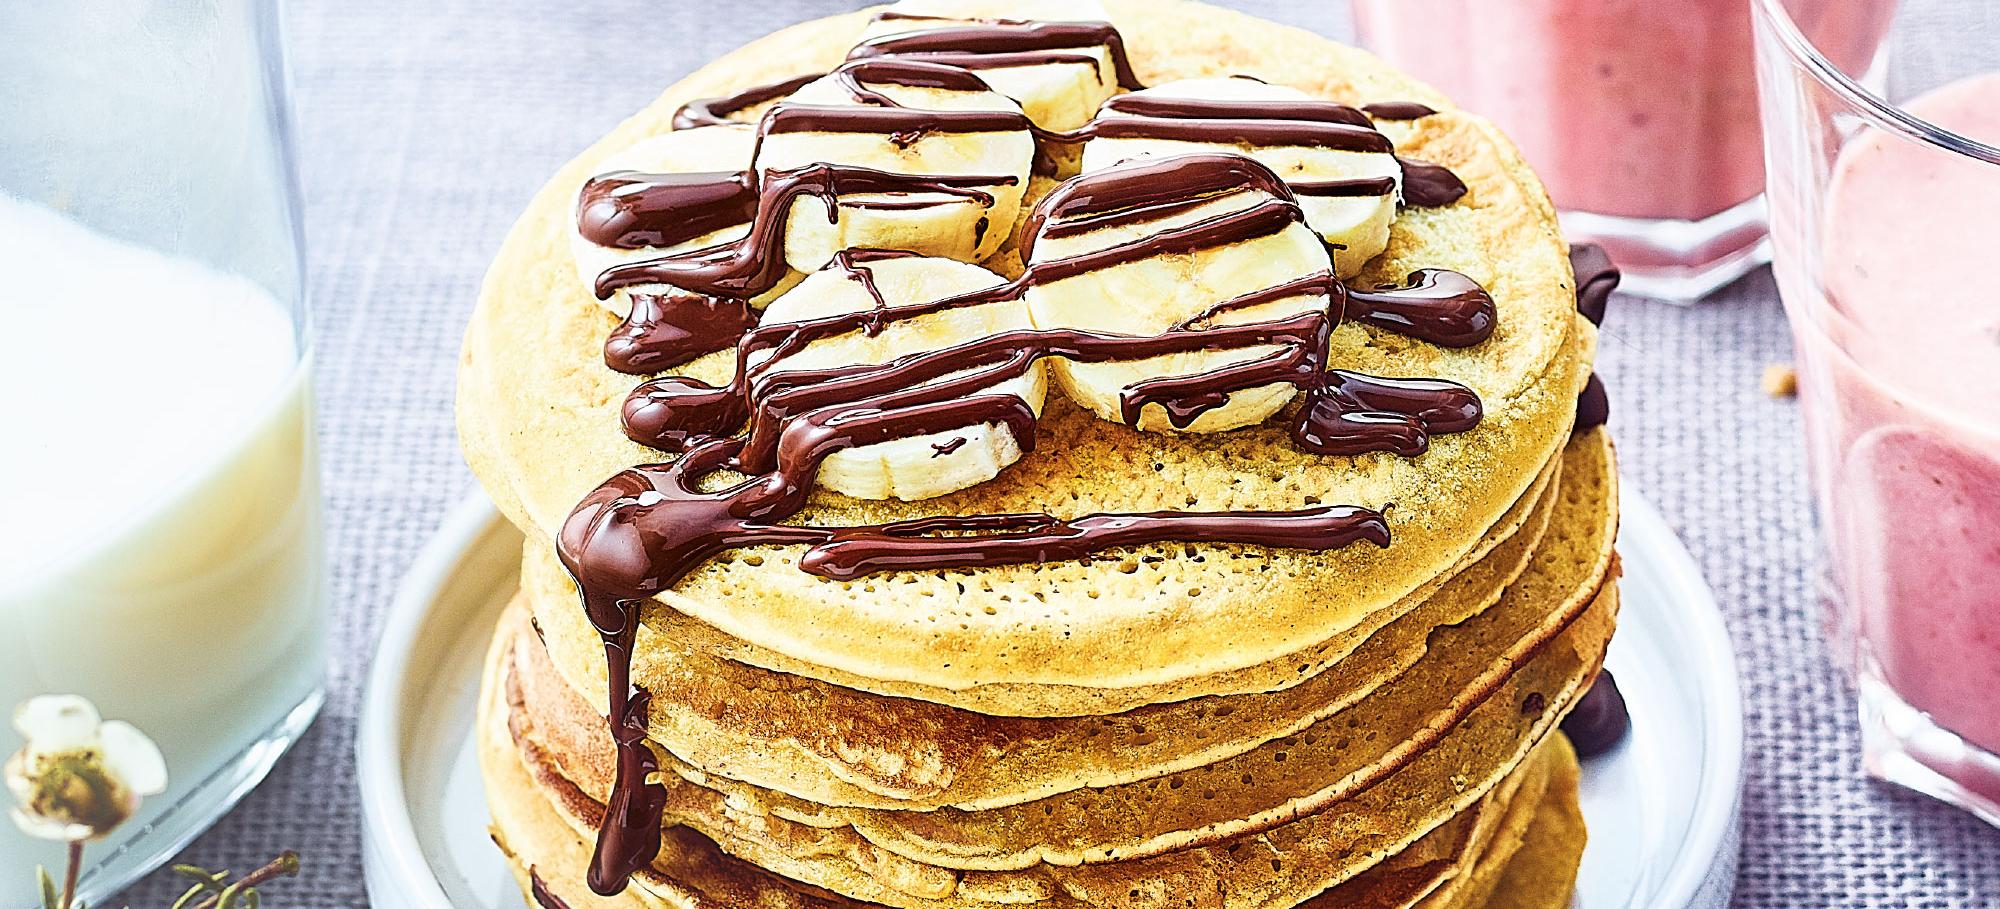 pancakes bananes chocolat recette facile gourmande mes recettes